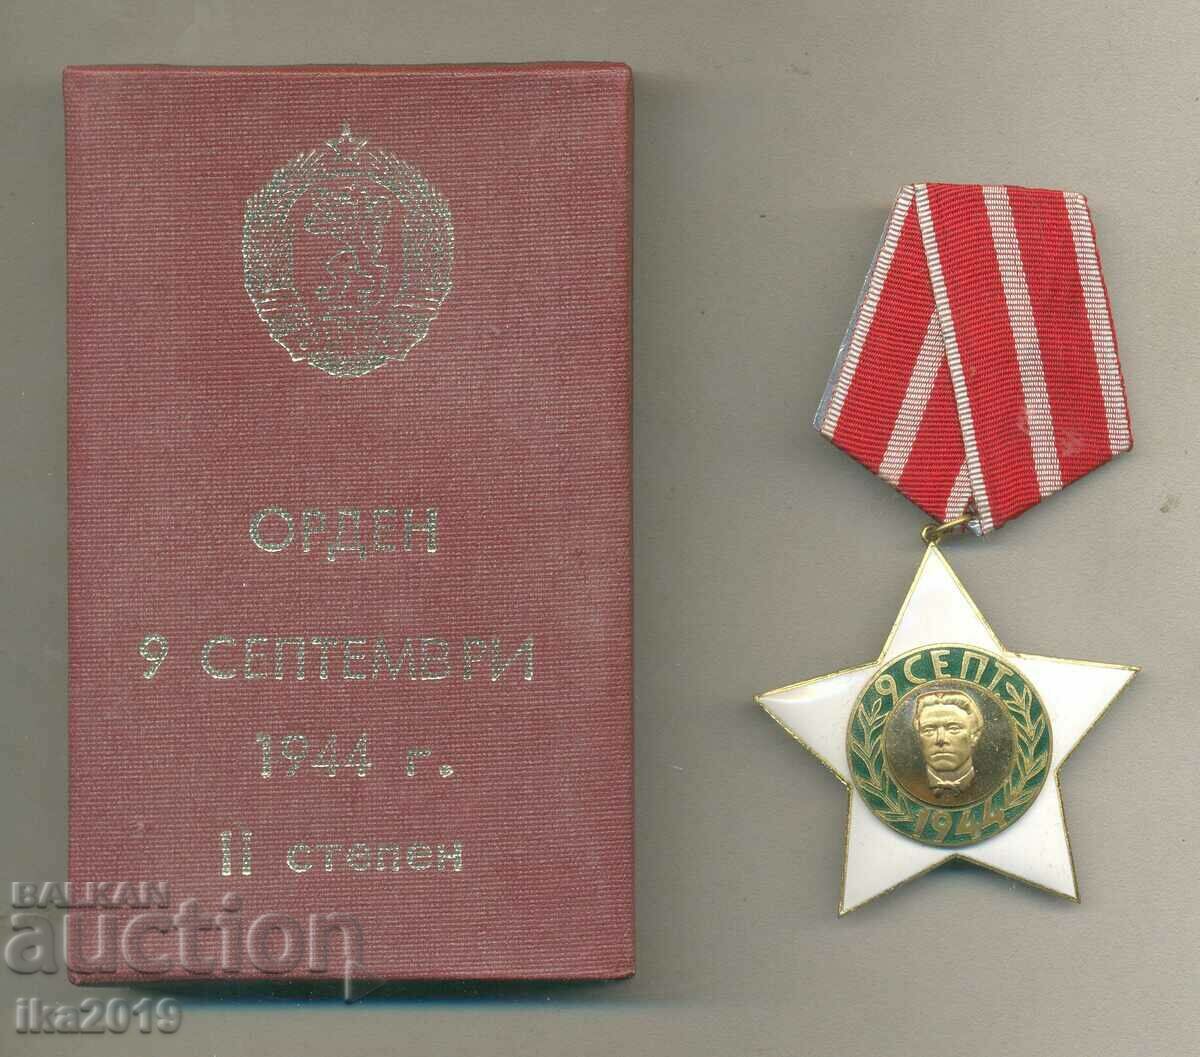 Comanda din 9 septembrie, gradul II cu cutie originala